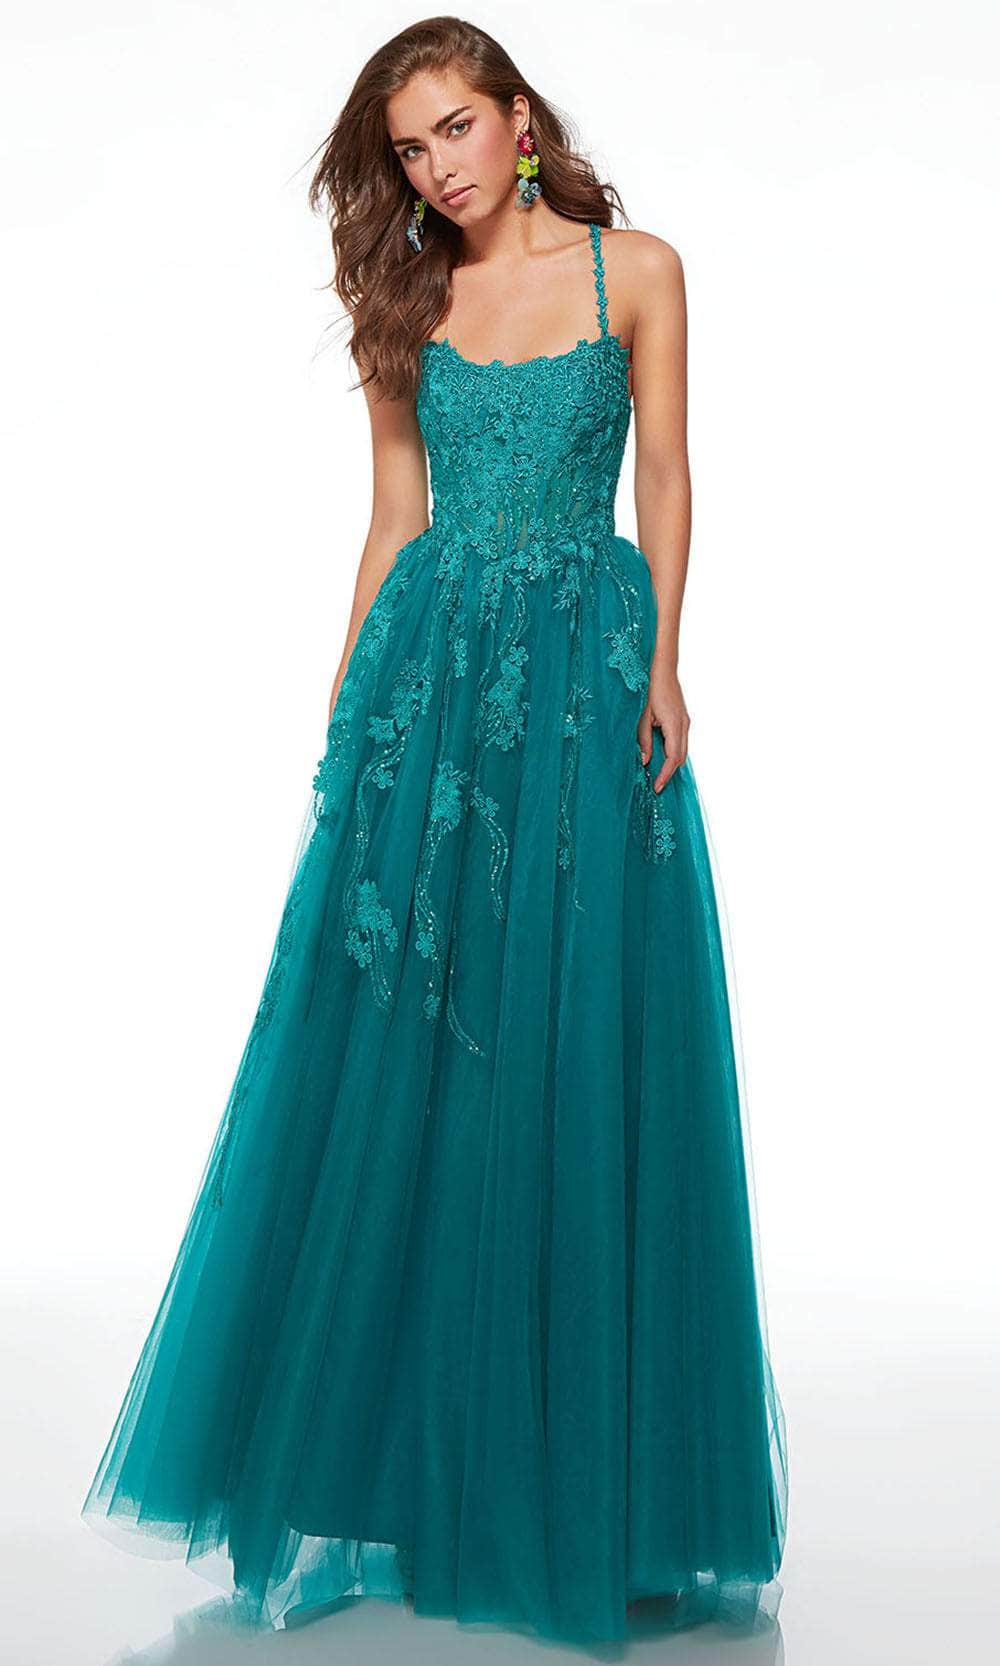 Image of Alyce Paris 61541 - Floral Lace Applique A-line Prom Dress